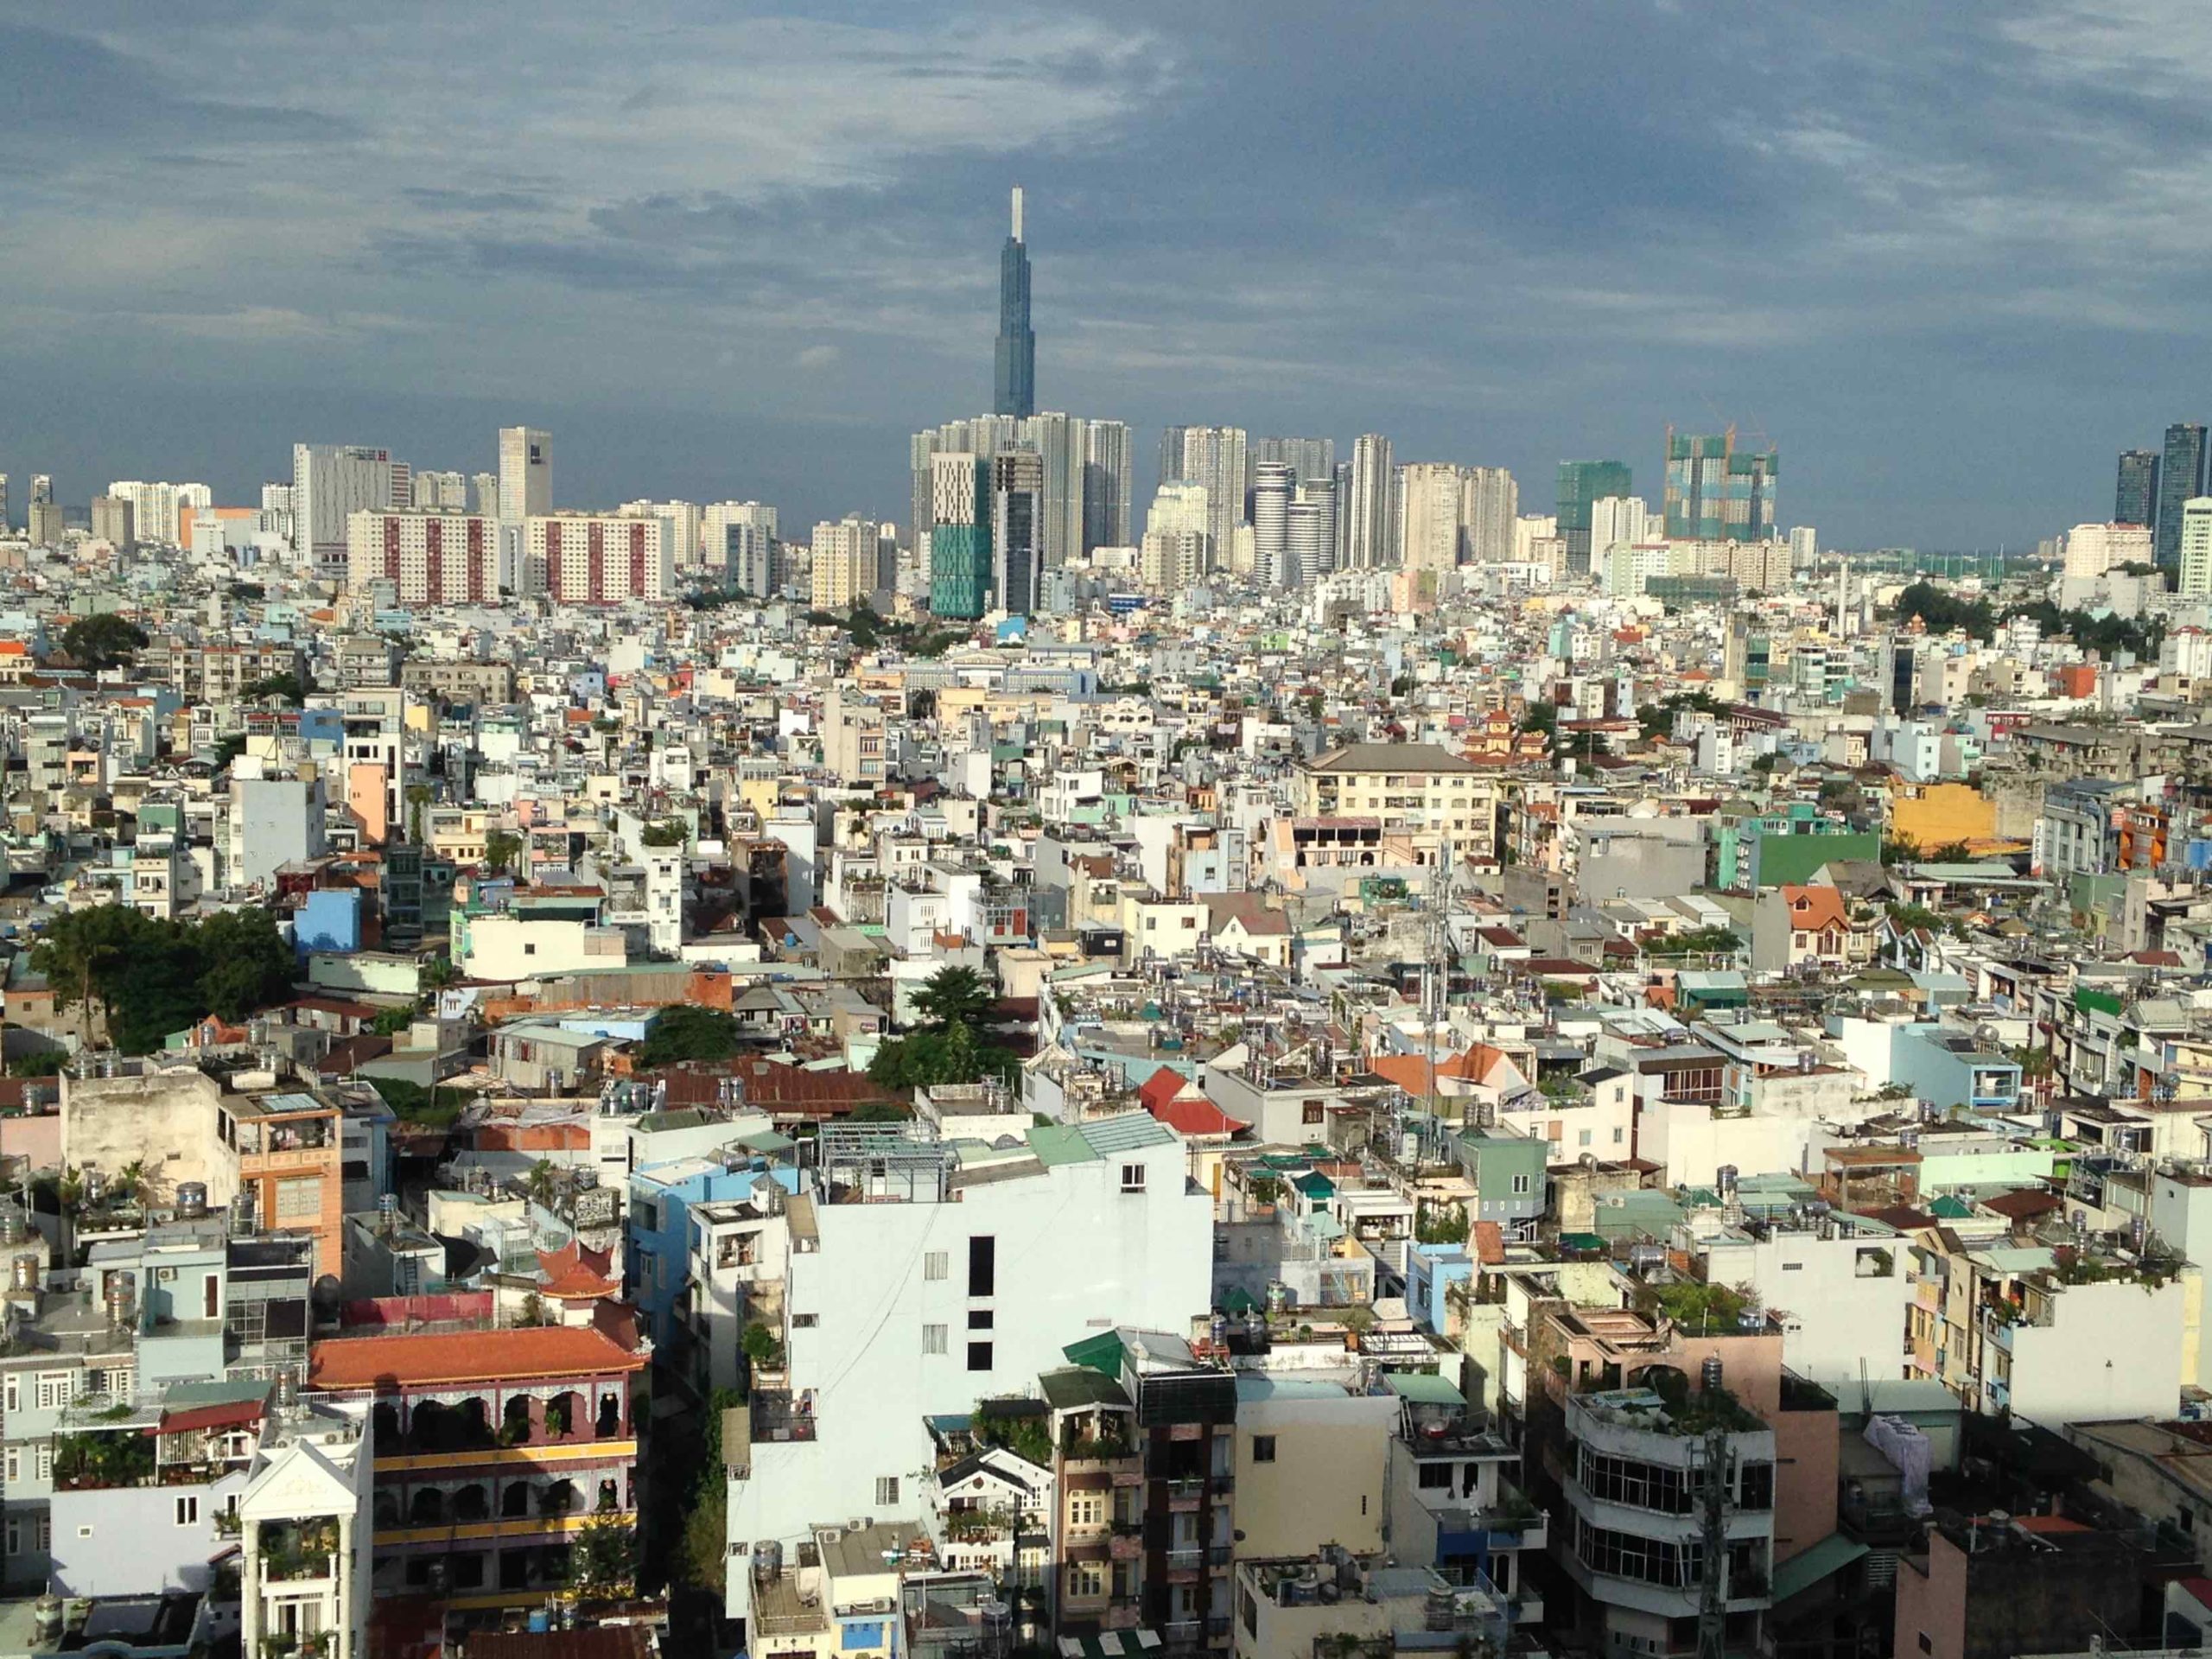 Urbanités sud-est asiatiques / Des ruelles aux tours, la métropolisation vietnamienne à marche forcée